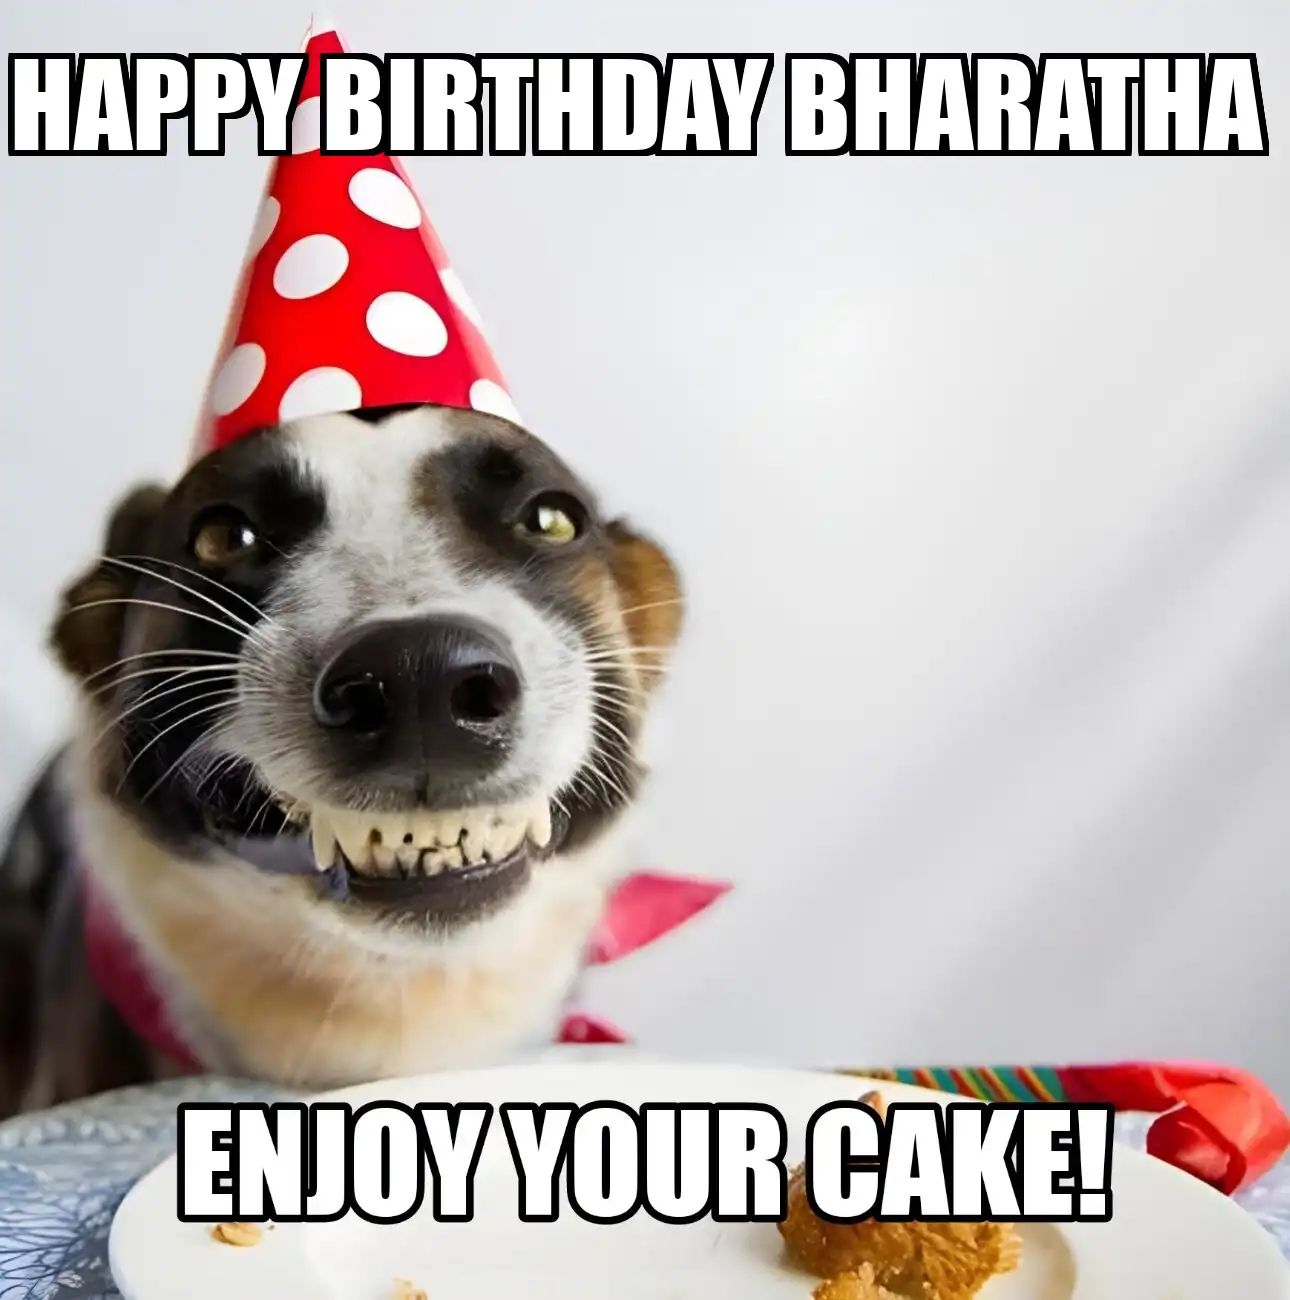 Happy Birthday Bharatha Enjoy Your Cake Dog Meme